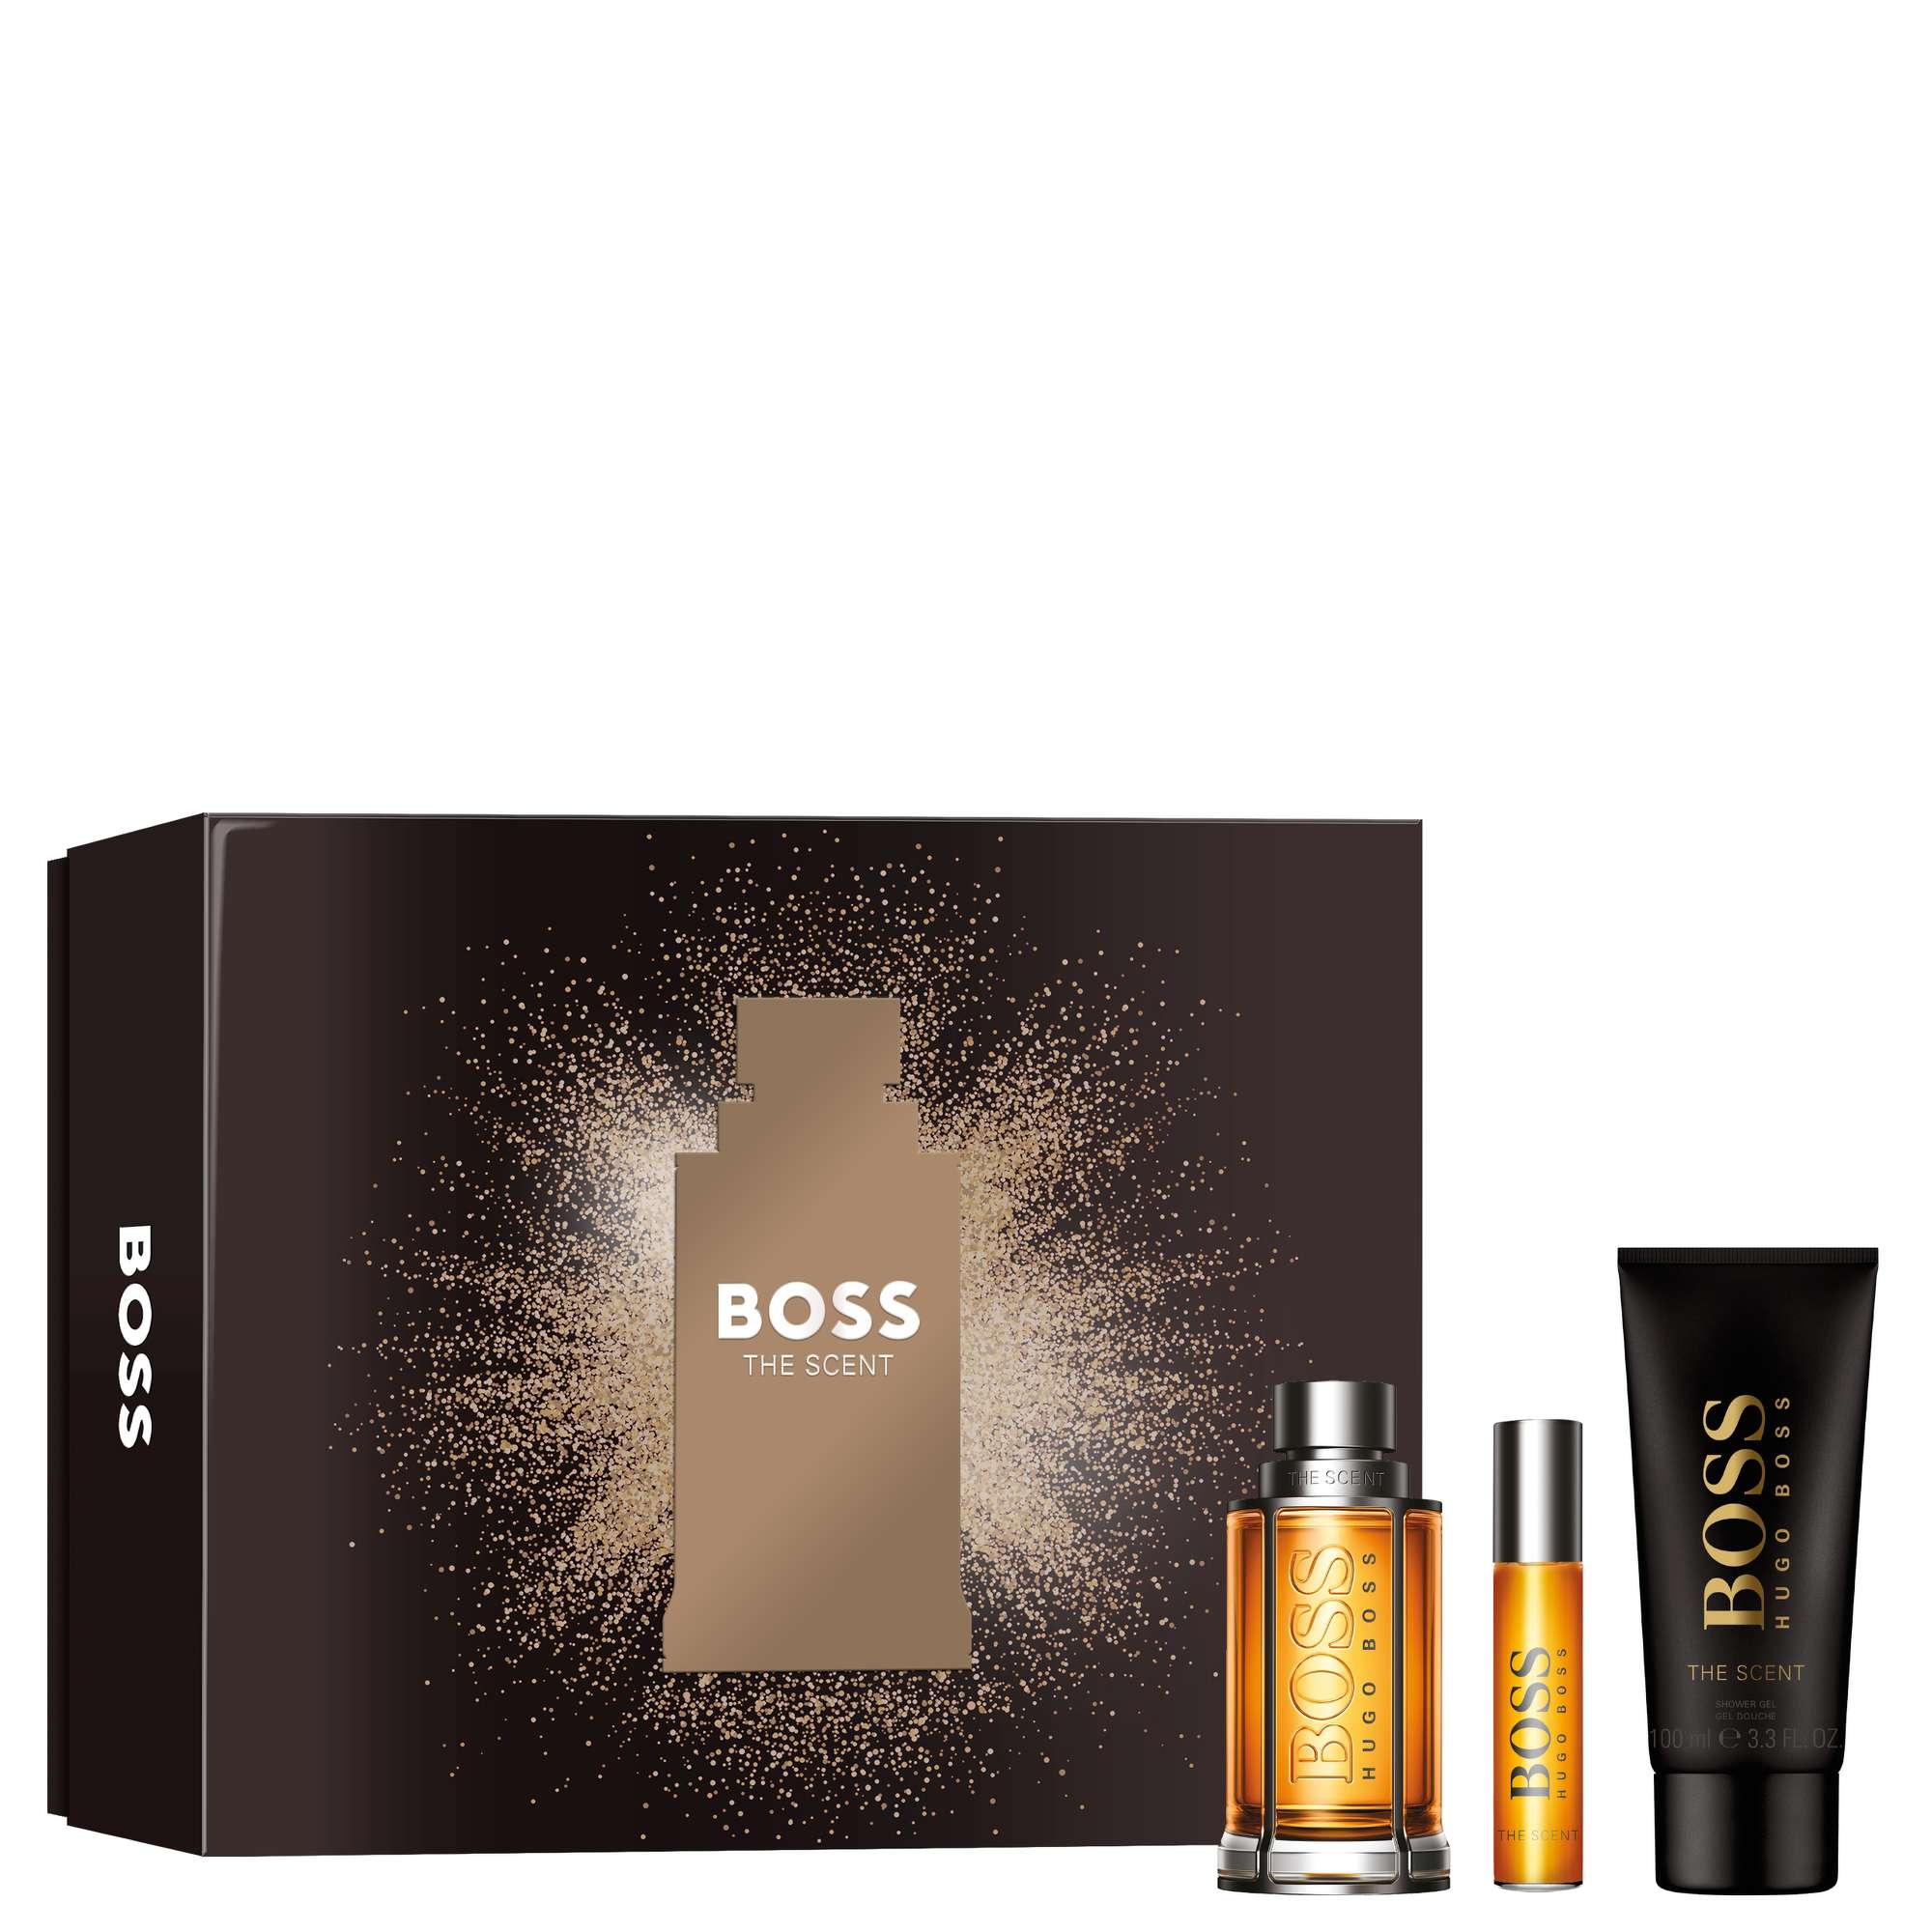 Photos - Women's Fragrance Hugo Boss BOSS The Scent For Him Eau de Toilette Spray 100ml Gift Set 